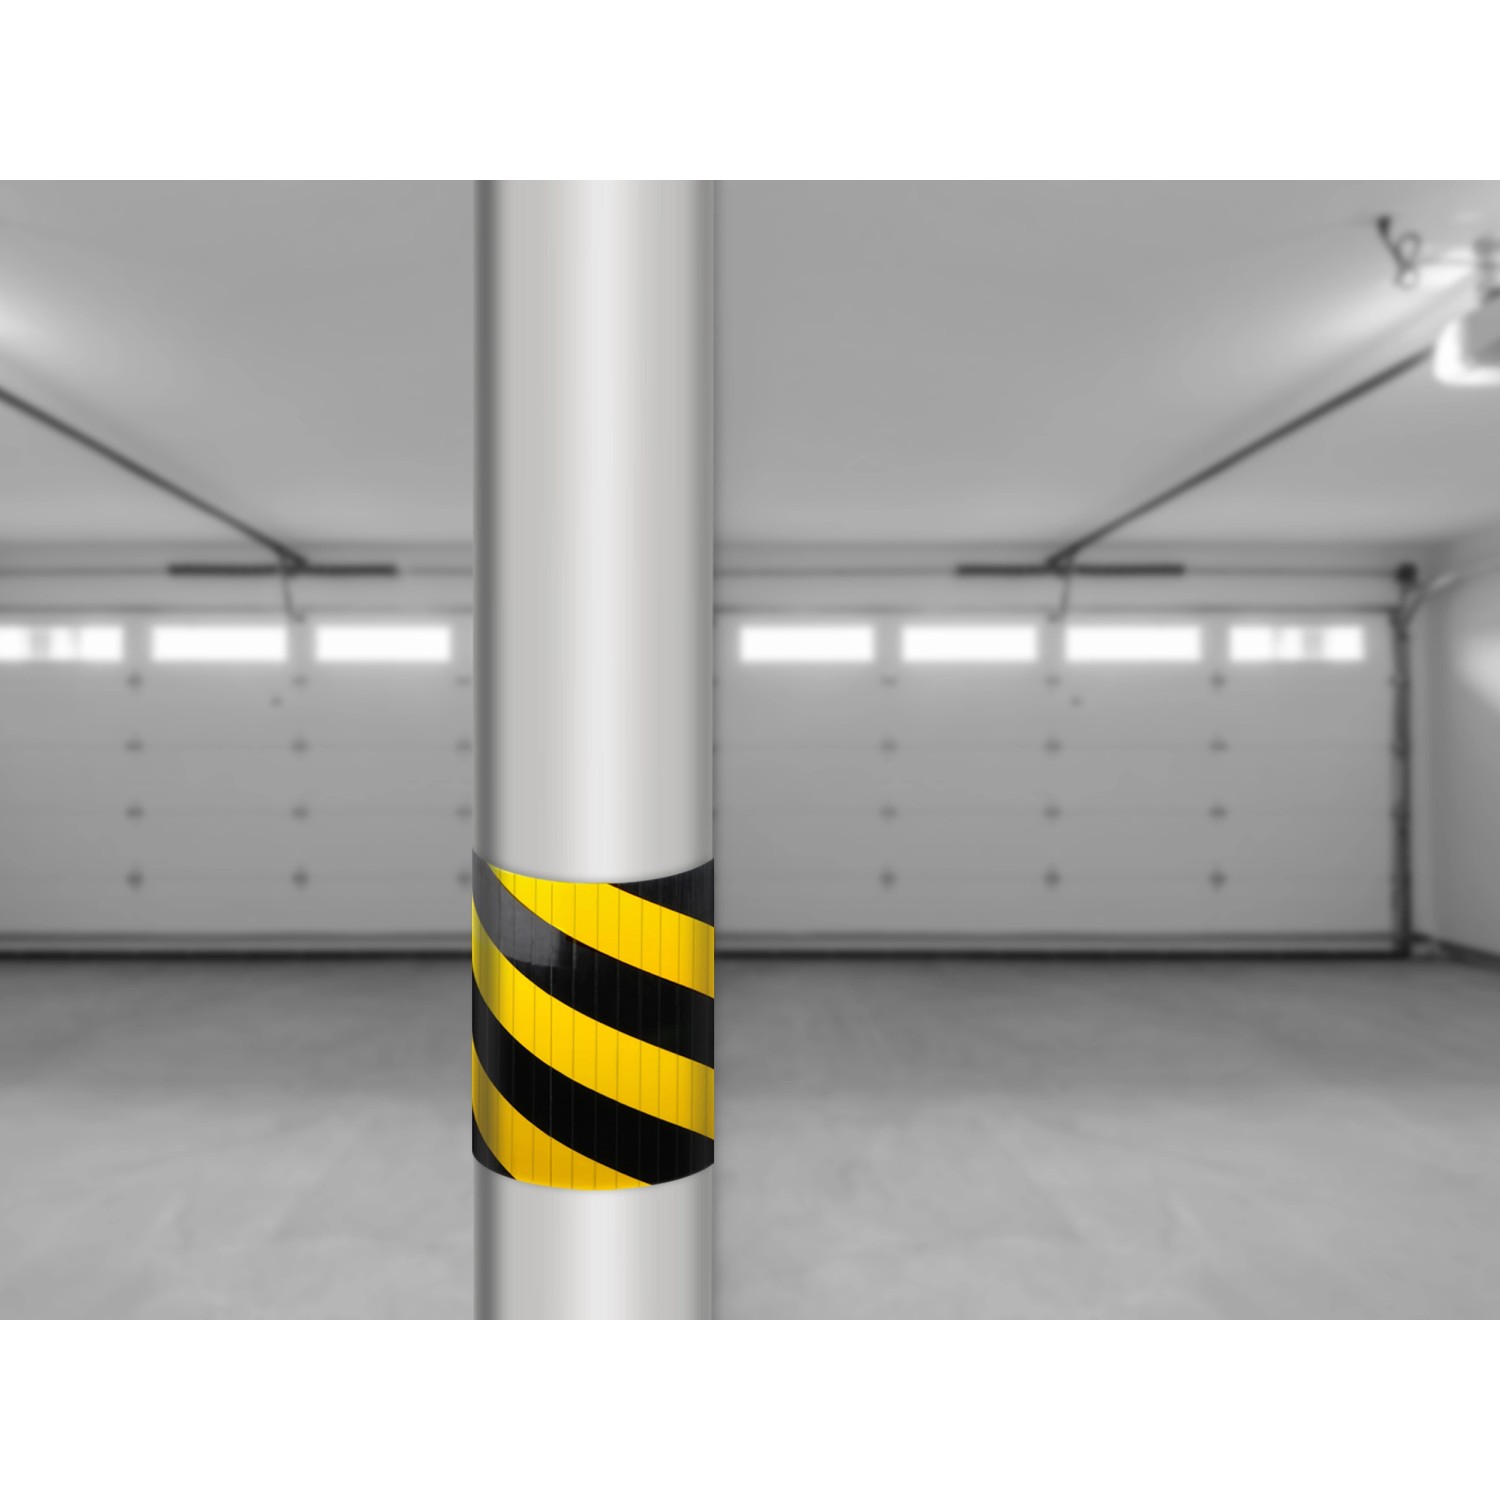 Apa Garagen-Wandschutz 30 cm x 20 cm x 1 cm Schwarz-Gelb kaufen